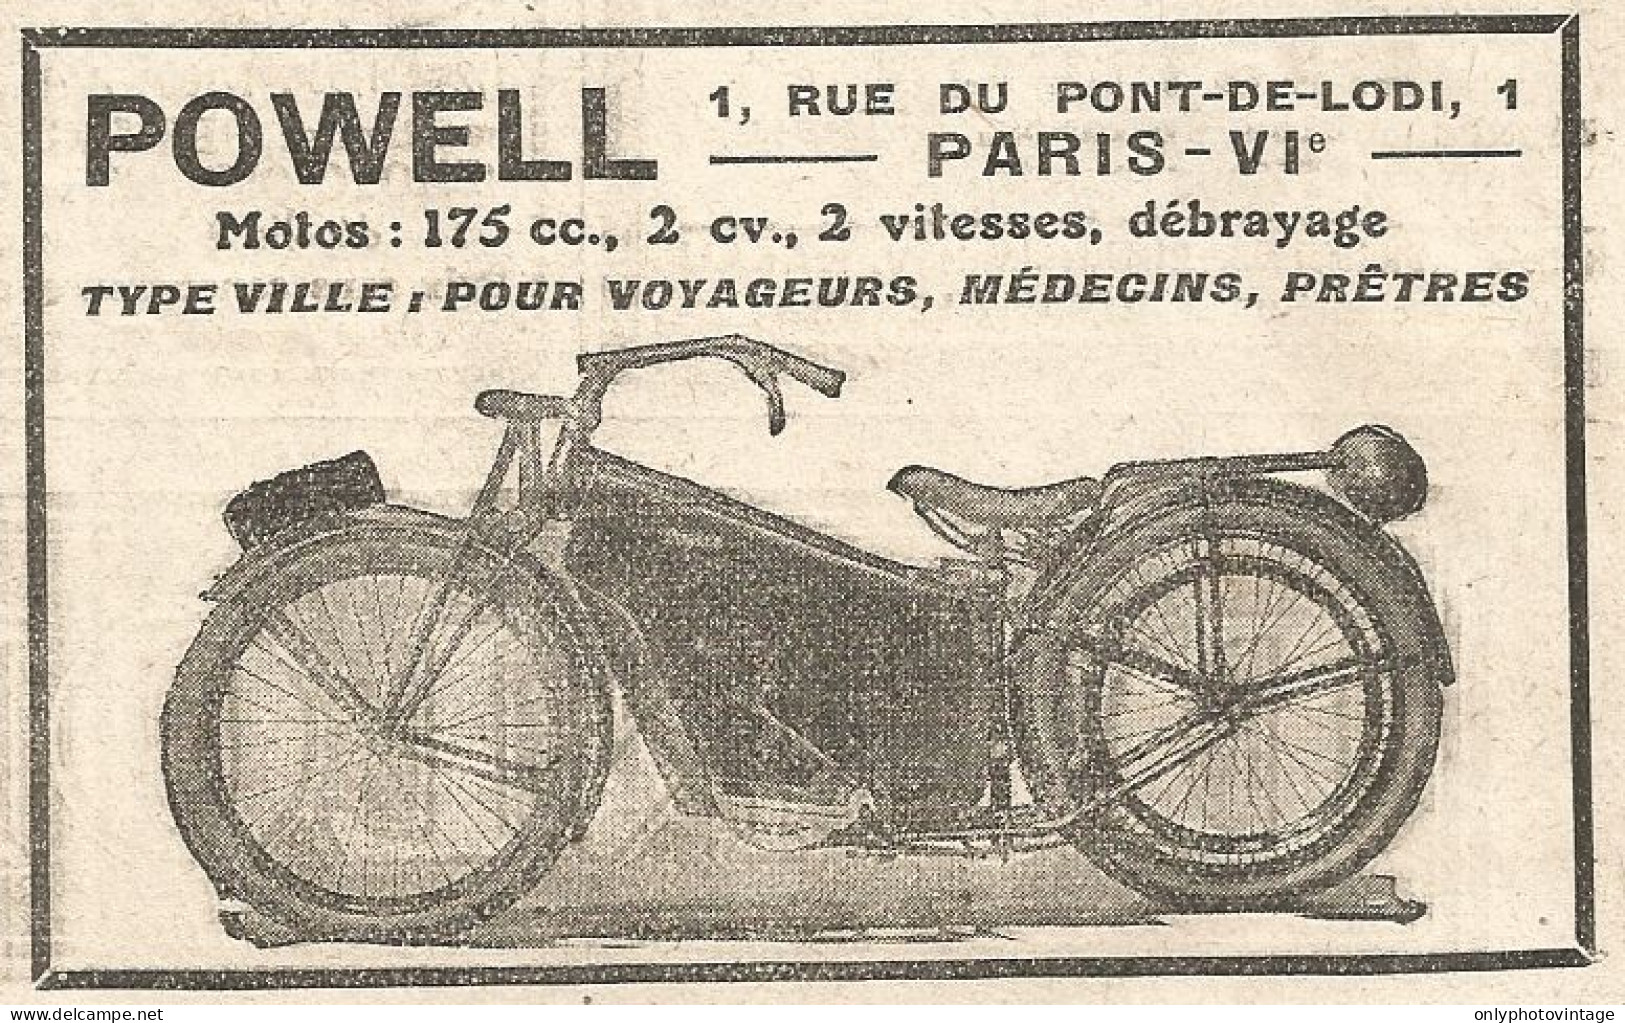 Motocicletta 175 Cc. POWELL - Pubblicitï¿½ Del 1925 - Old Advertising - Publicités